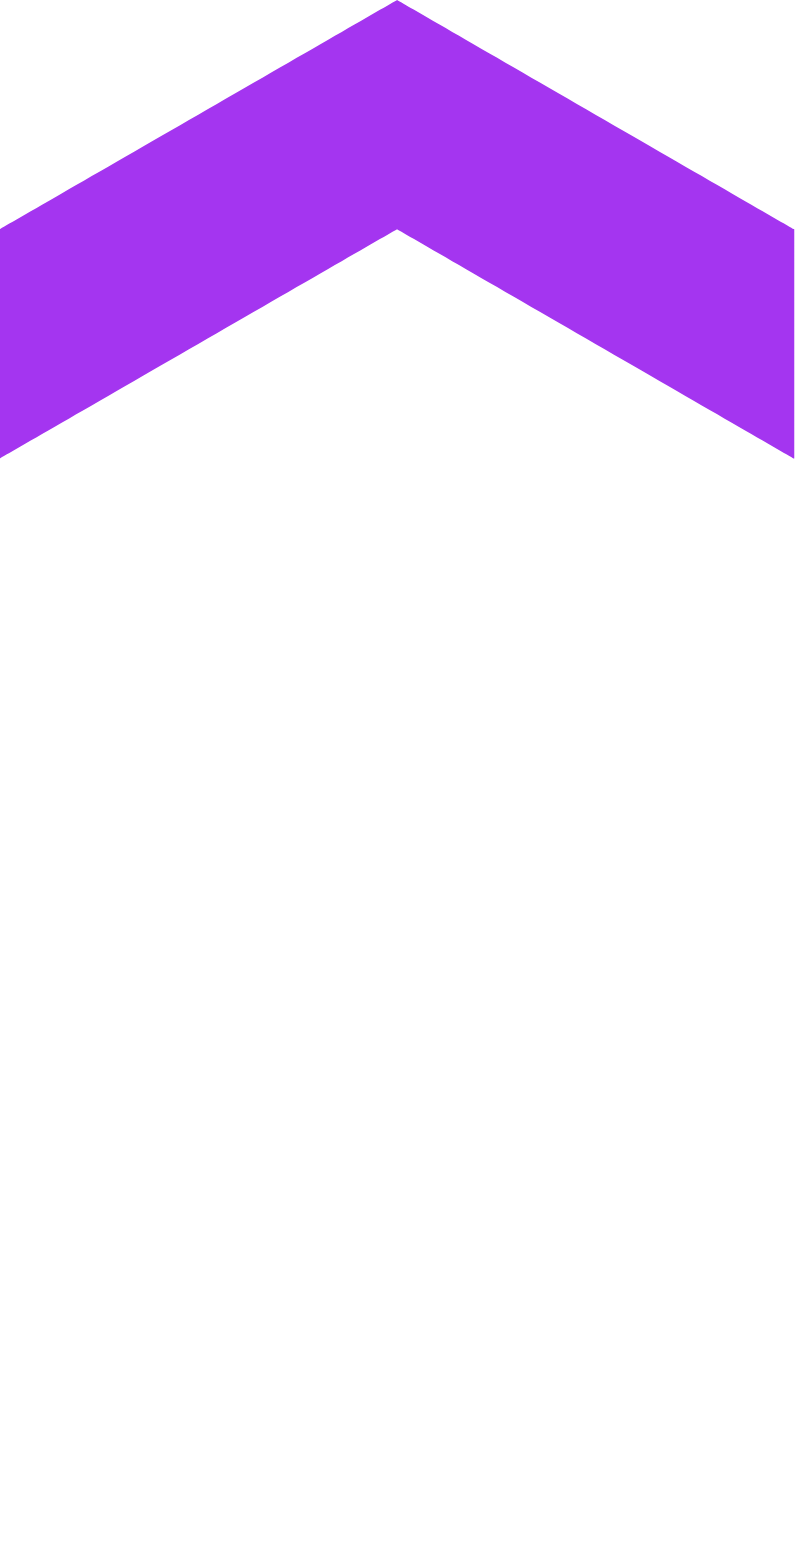 Udemy logo for dark backgrounds (transparent PNG)